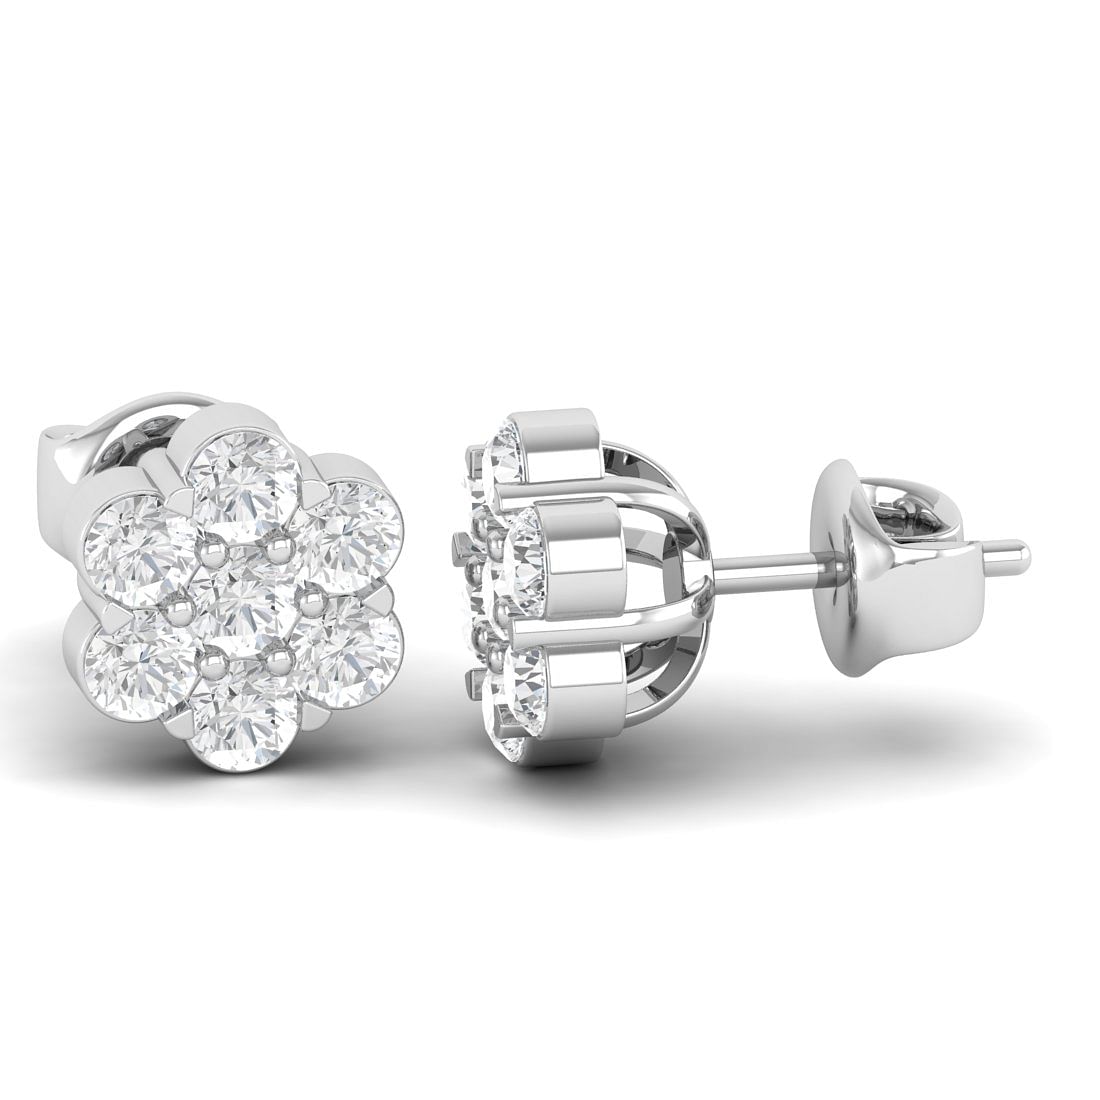 14k White Gold Day Flower Diamond Earrings Gift for her